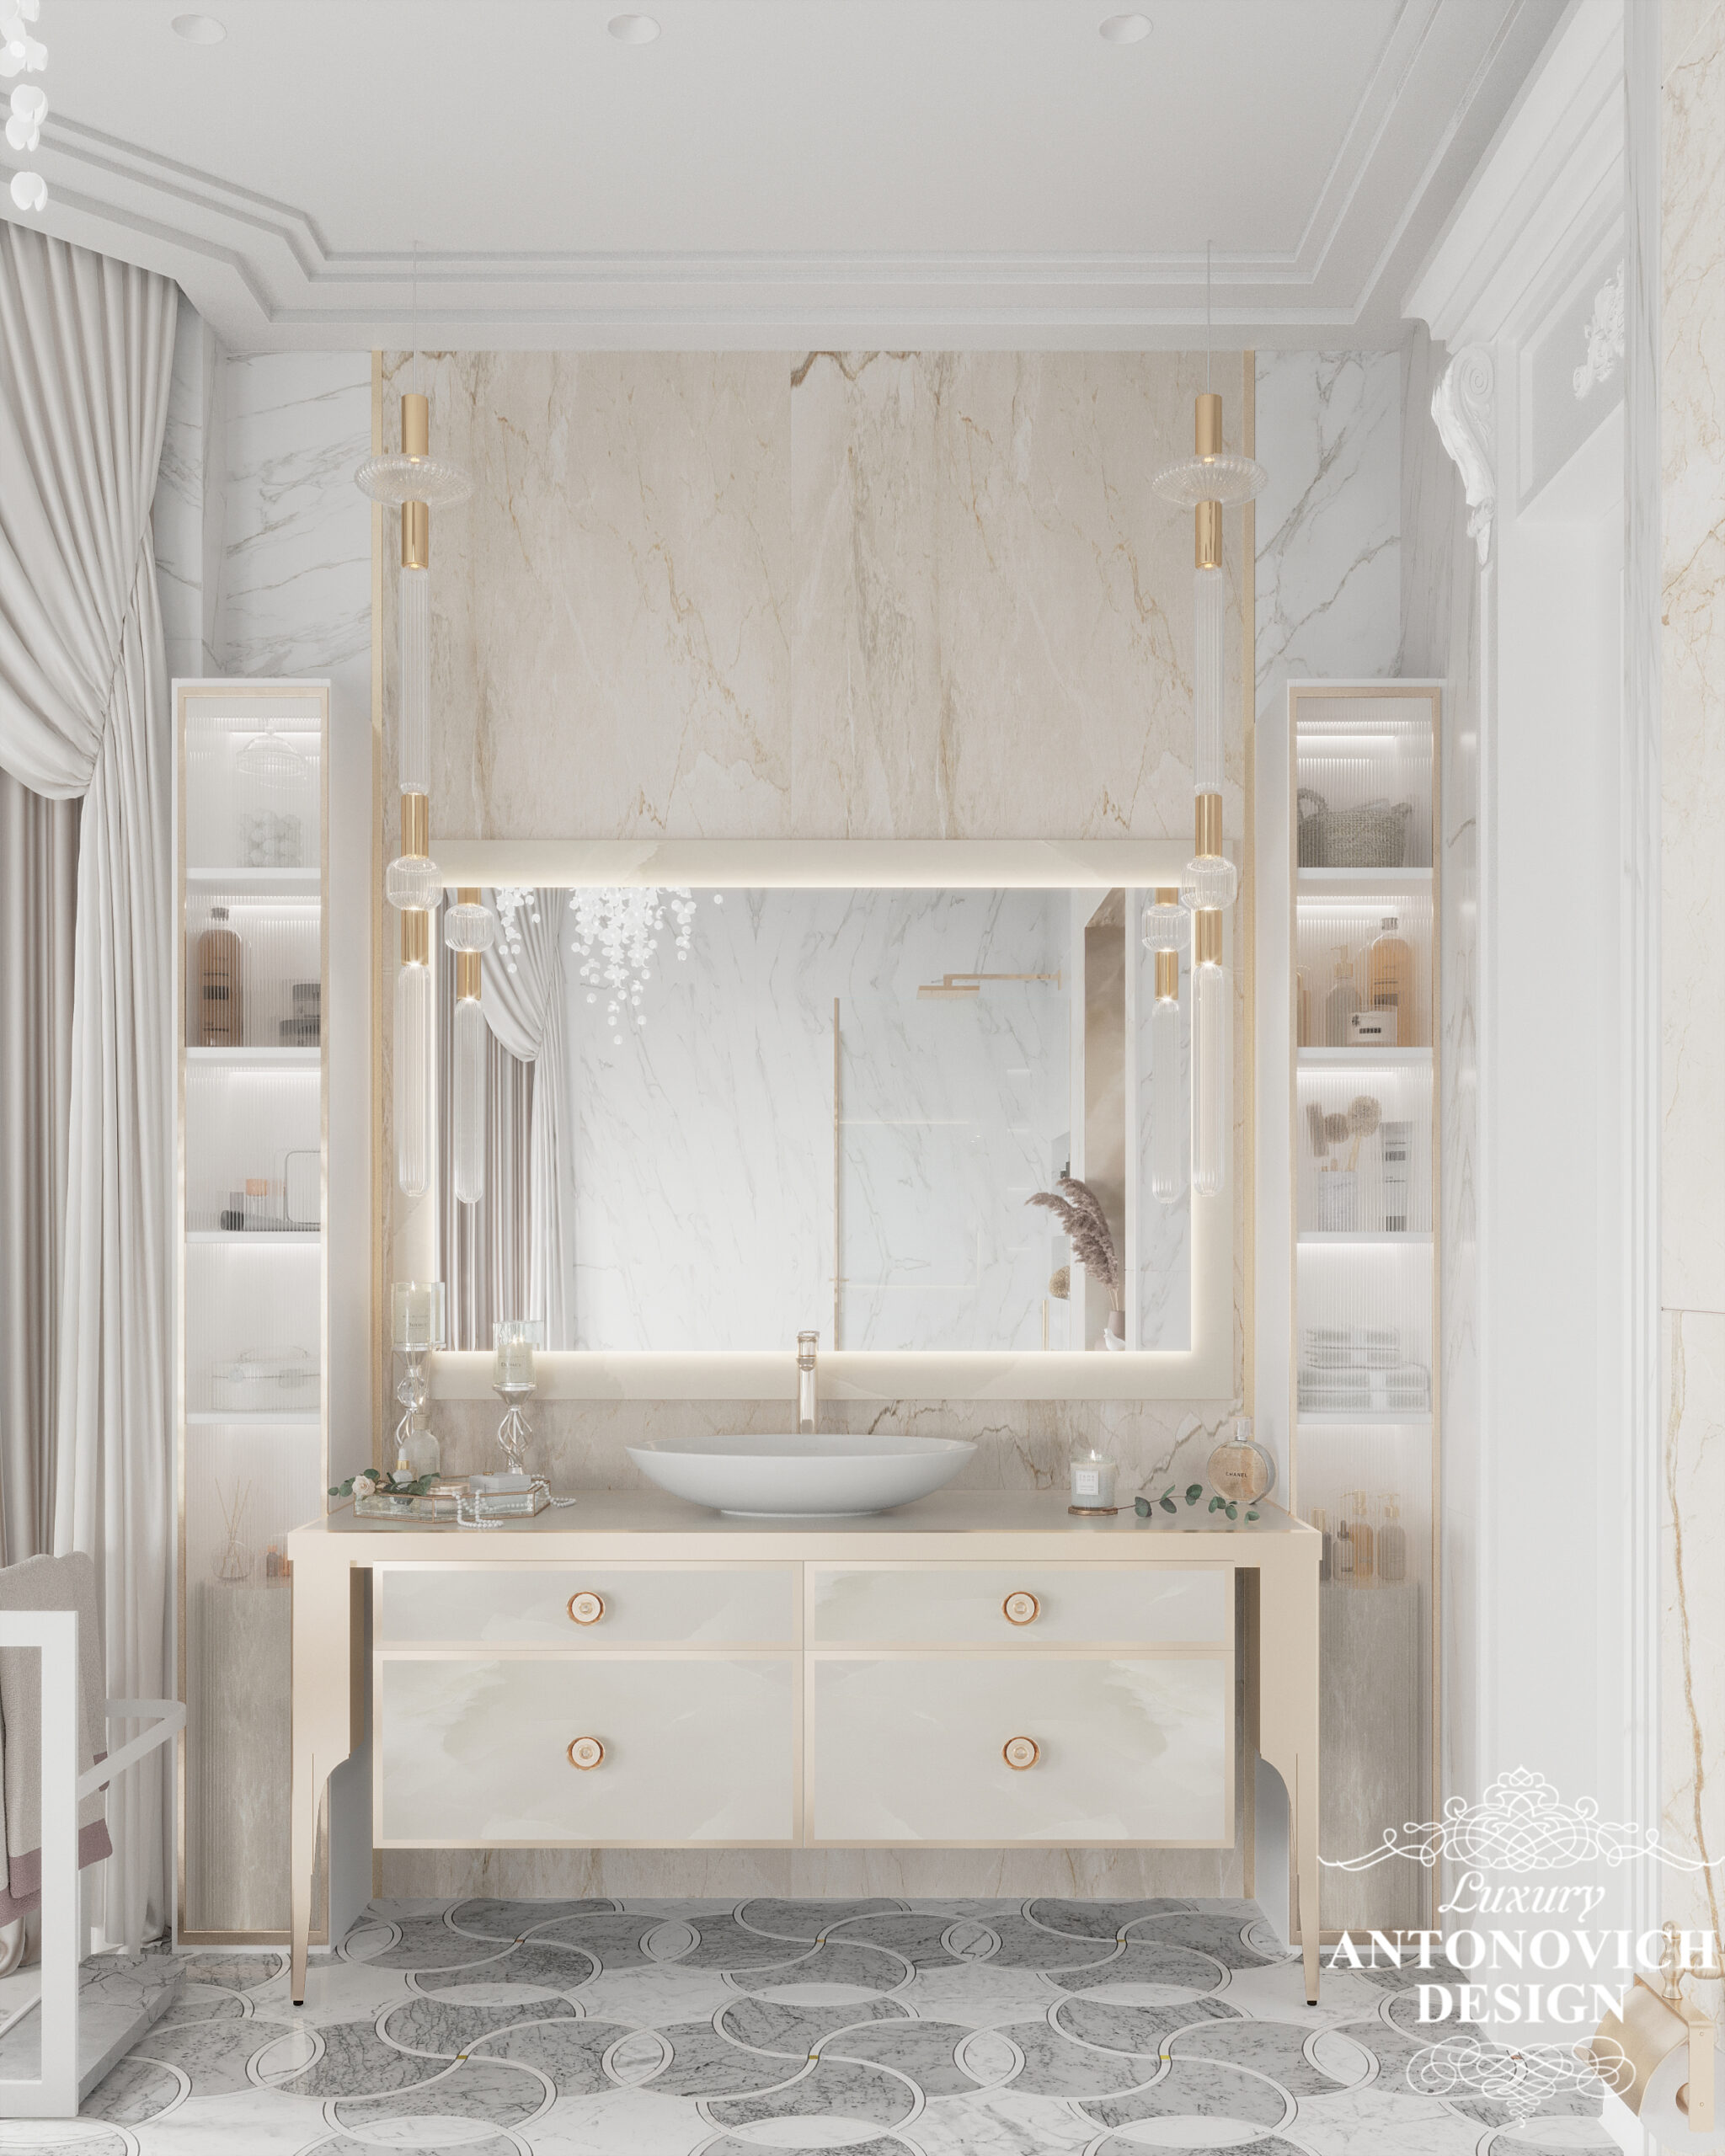 Мрамор, латунный профиль, душевая из закалённого стекла, кофейная палитра в дизайне современной ванной комнаты в стиле неоклассика. Дизайн интерьеров